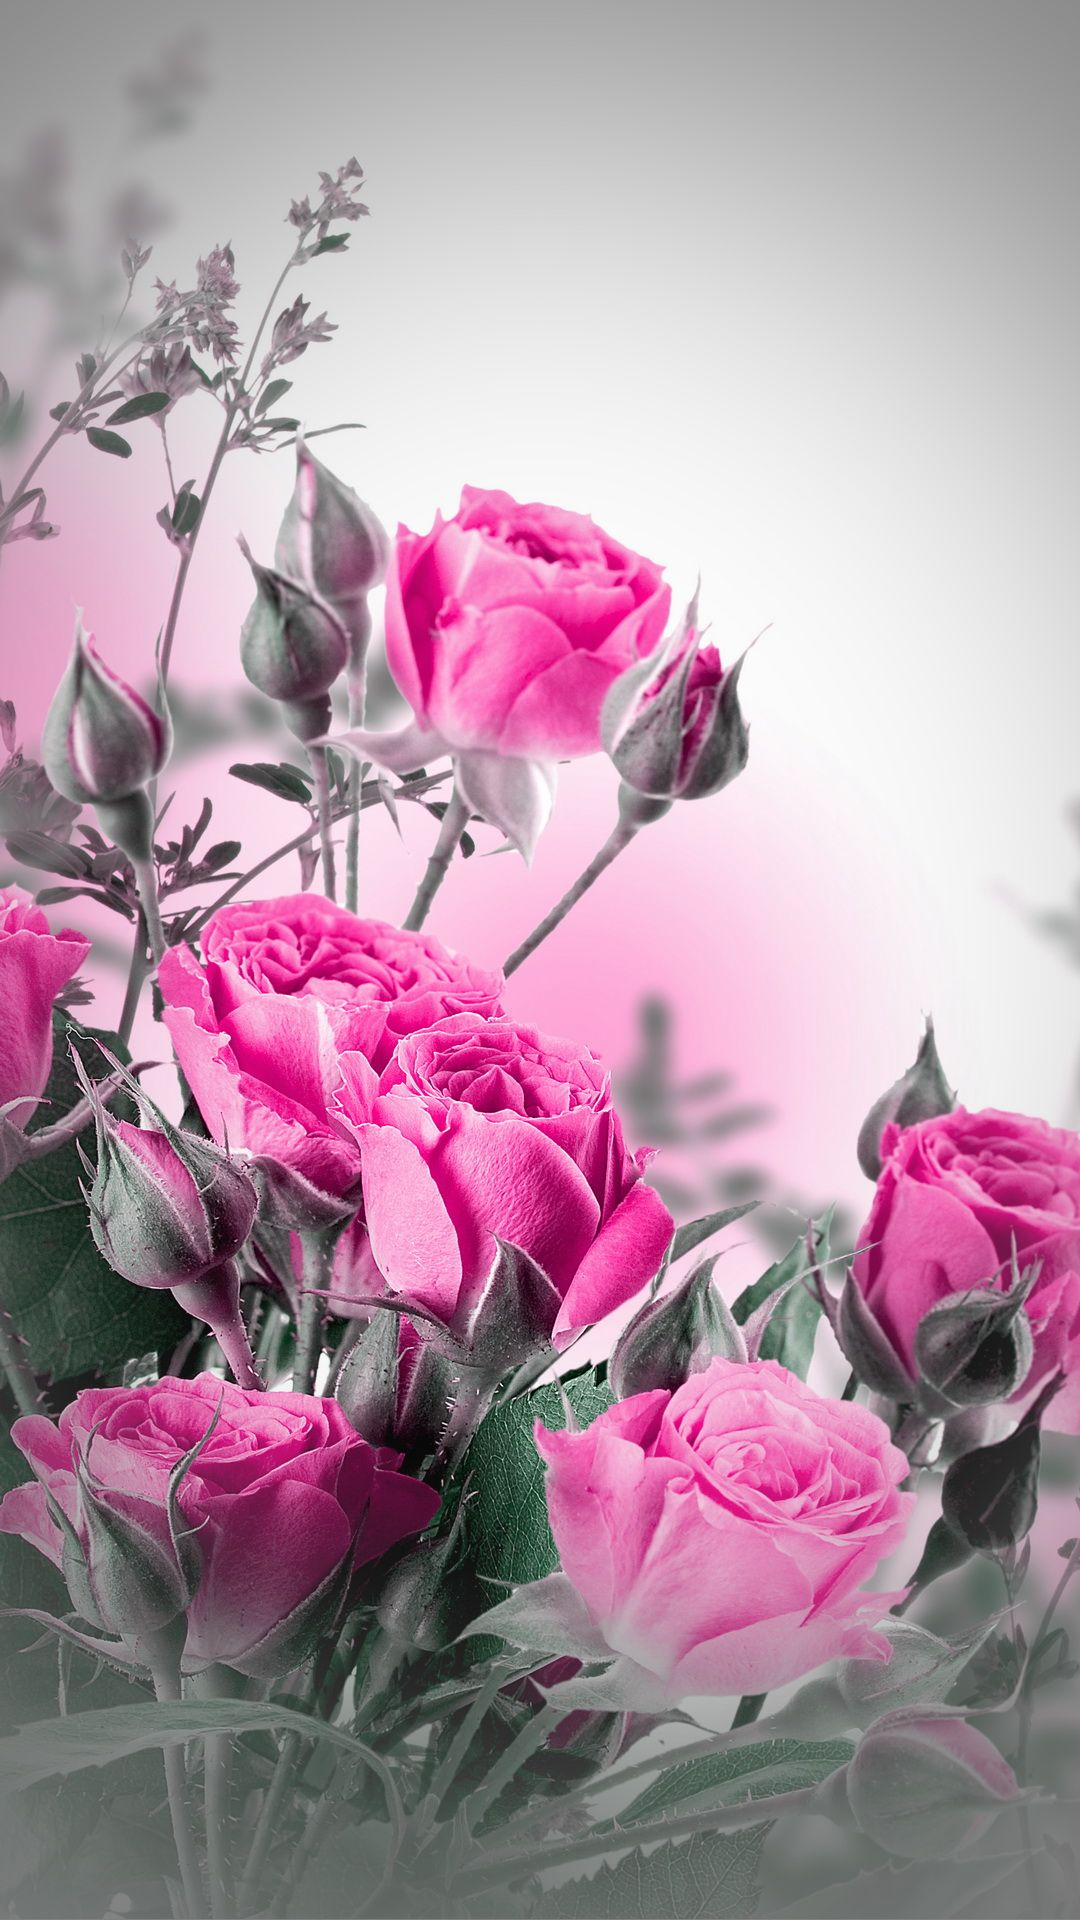 1080x1920 Pink Roses mobile wallpaper | Rose wallpaper, Flower phone wallpaper, Beautiful rose flowers